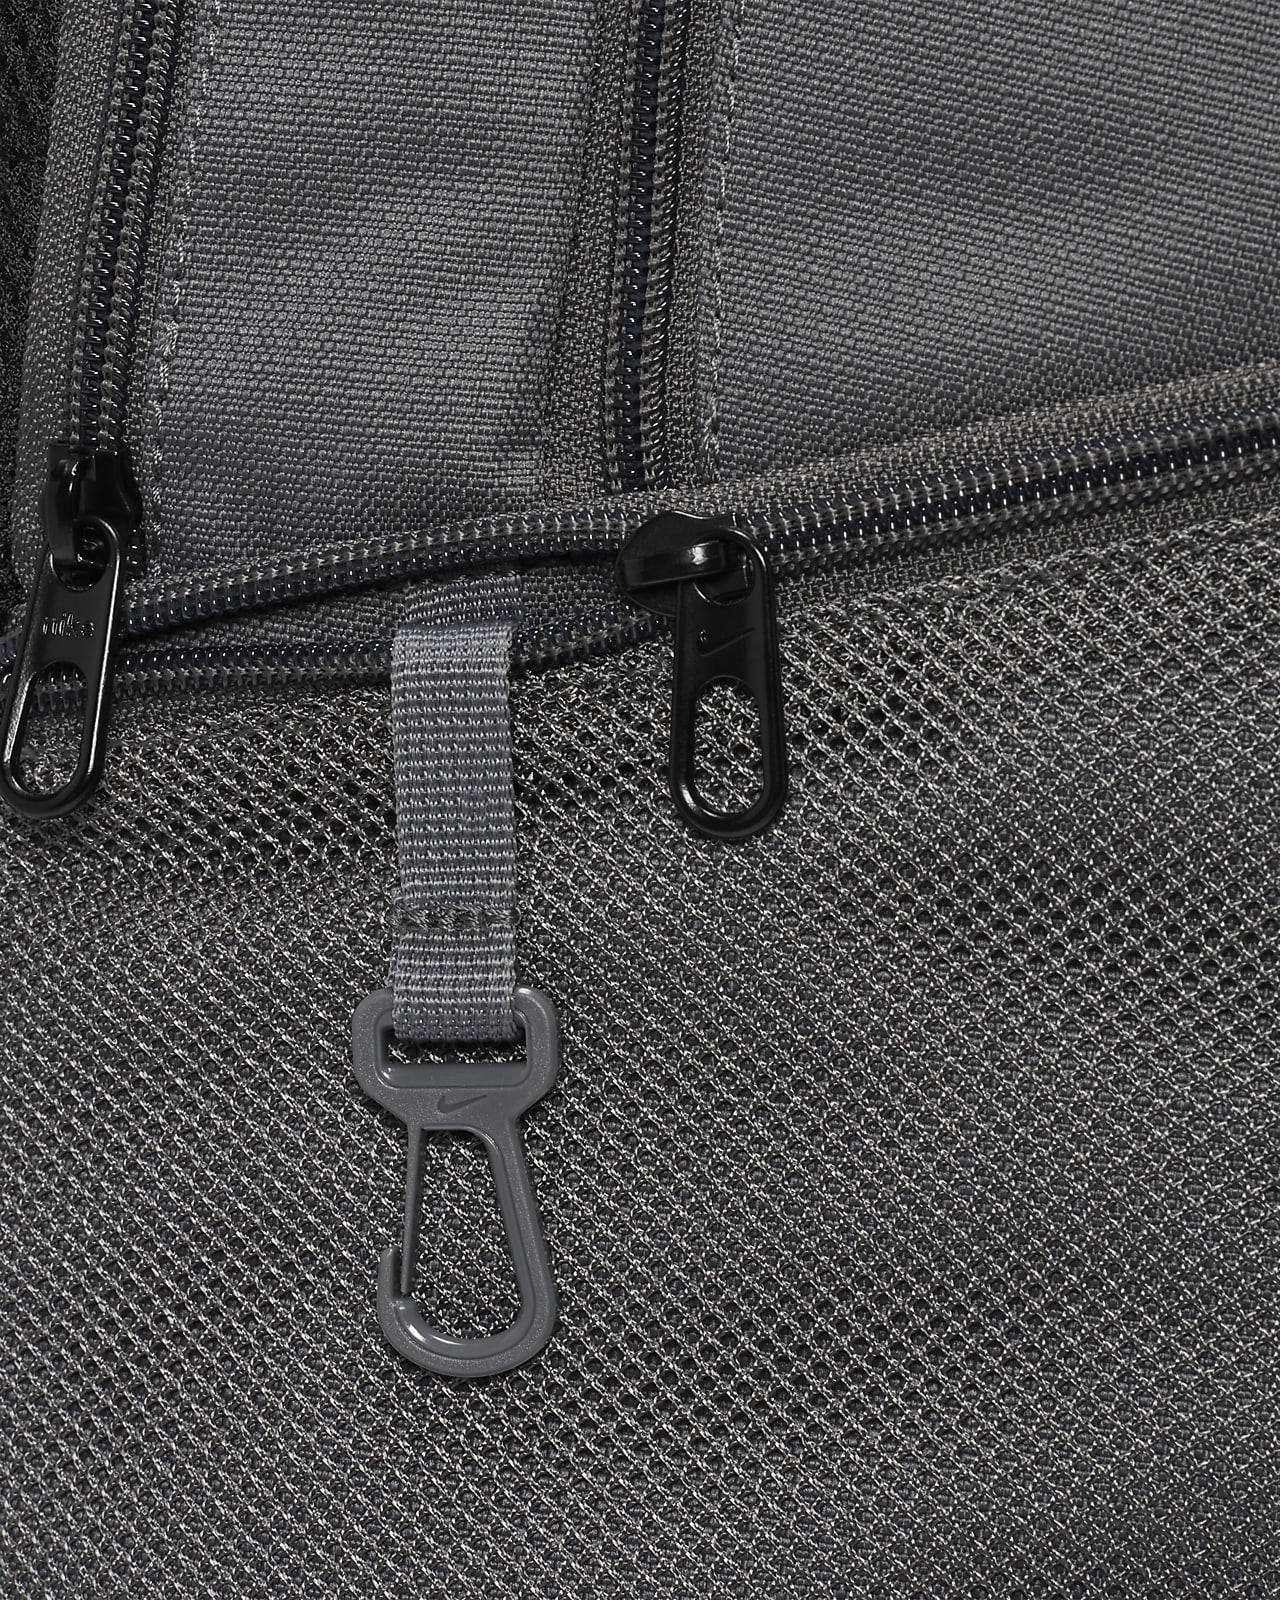 Nike Brasilia 9.0 M Backpack Siyah Unisex Sırt Çantası - CU1026-010 Fiyatı,  Özellikleri ve Yorumları